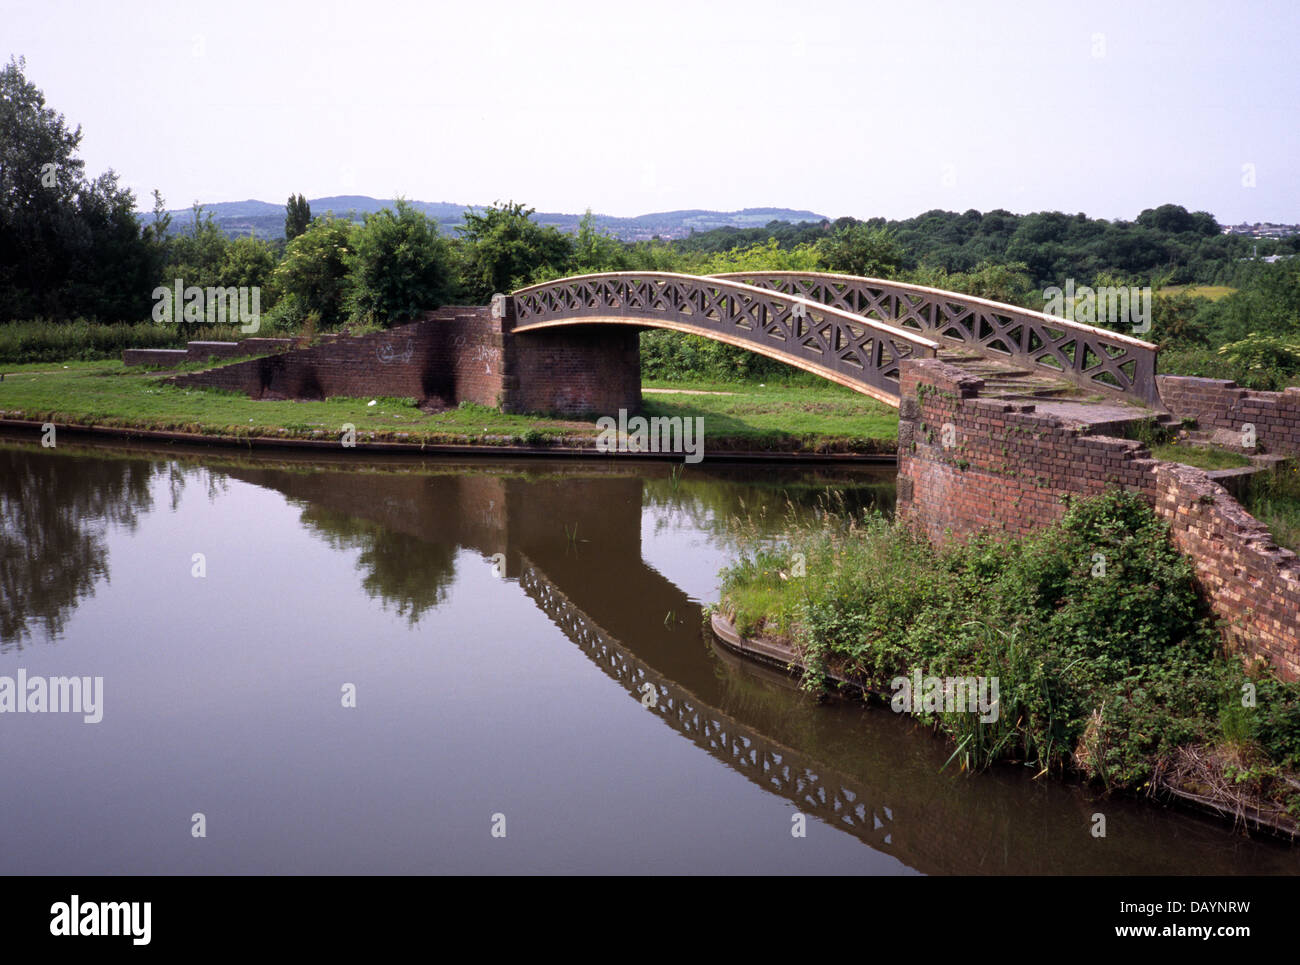 Puente sobre el Canal de Dudley No2, Netherton, Dudley, West Midlands, Inglaterra, Reino Unido. Foto de stock